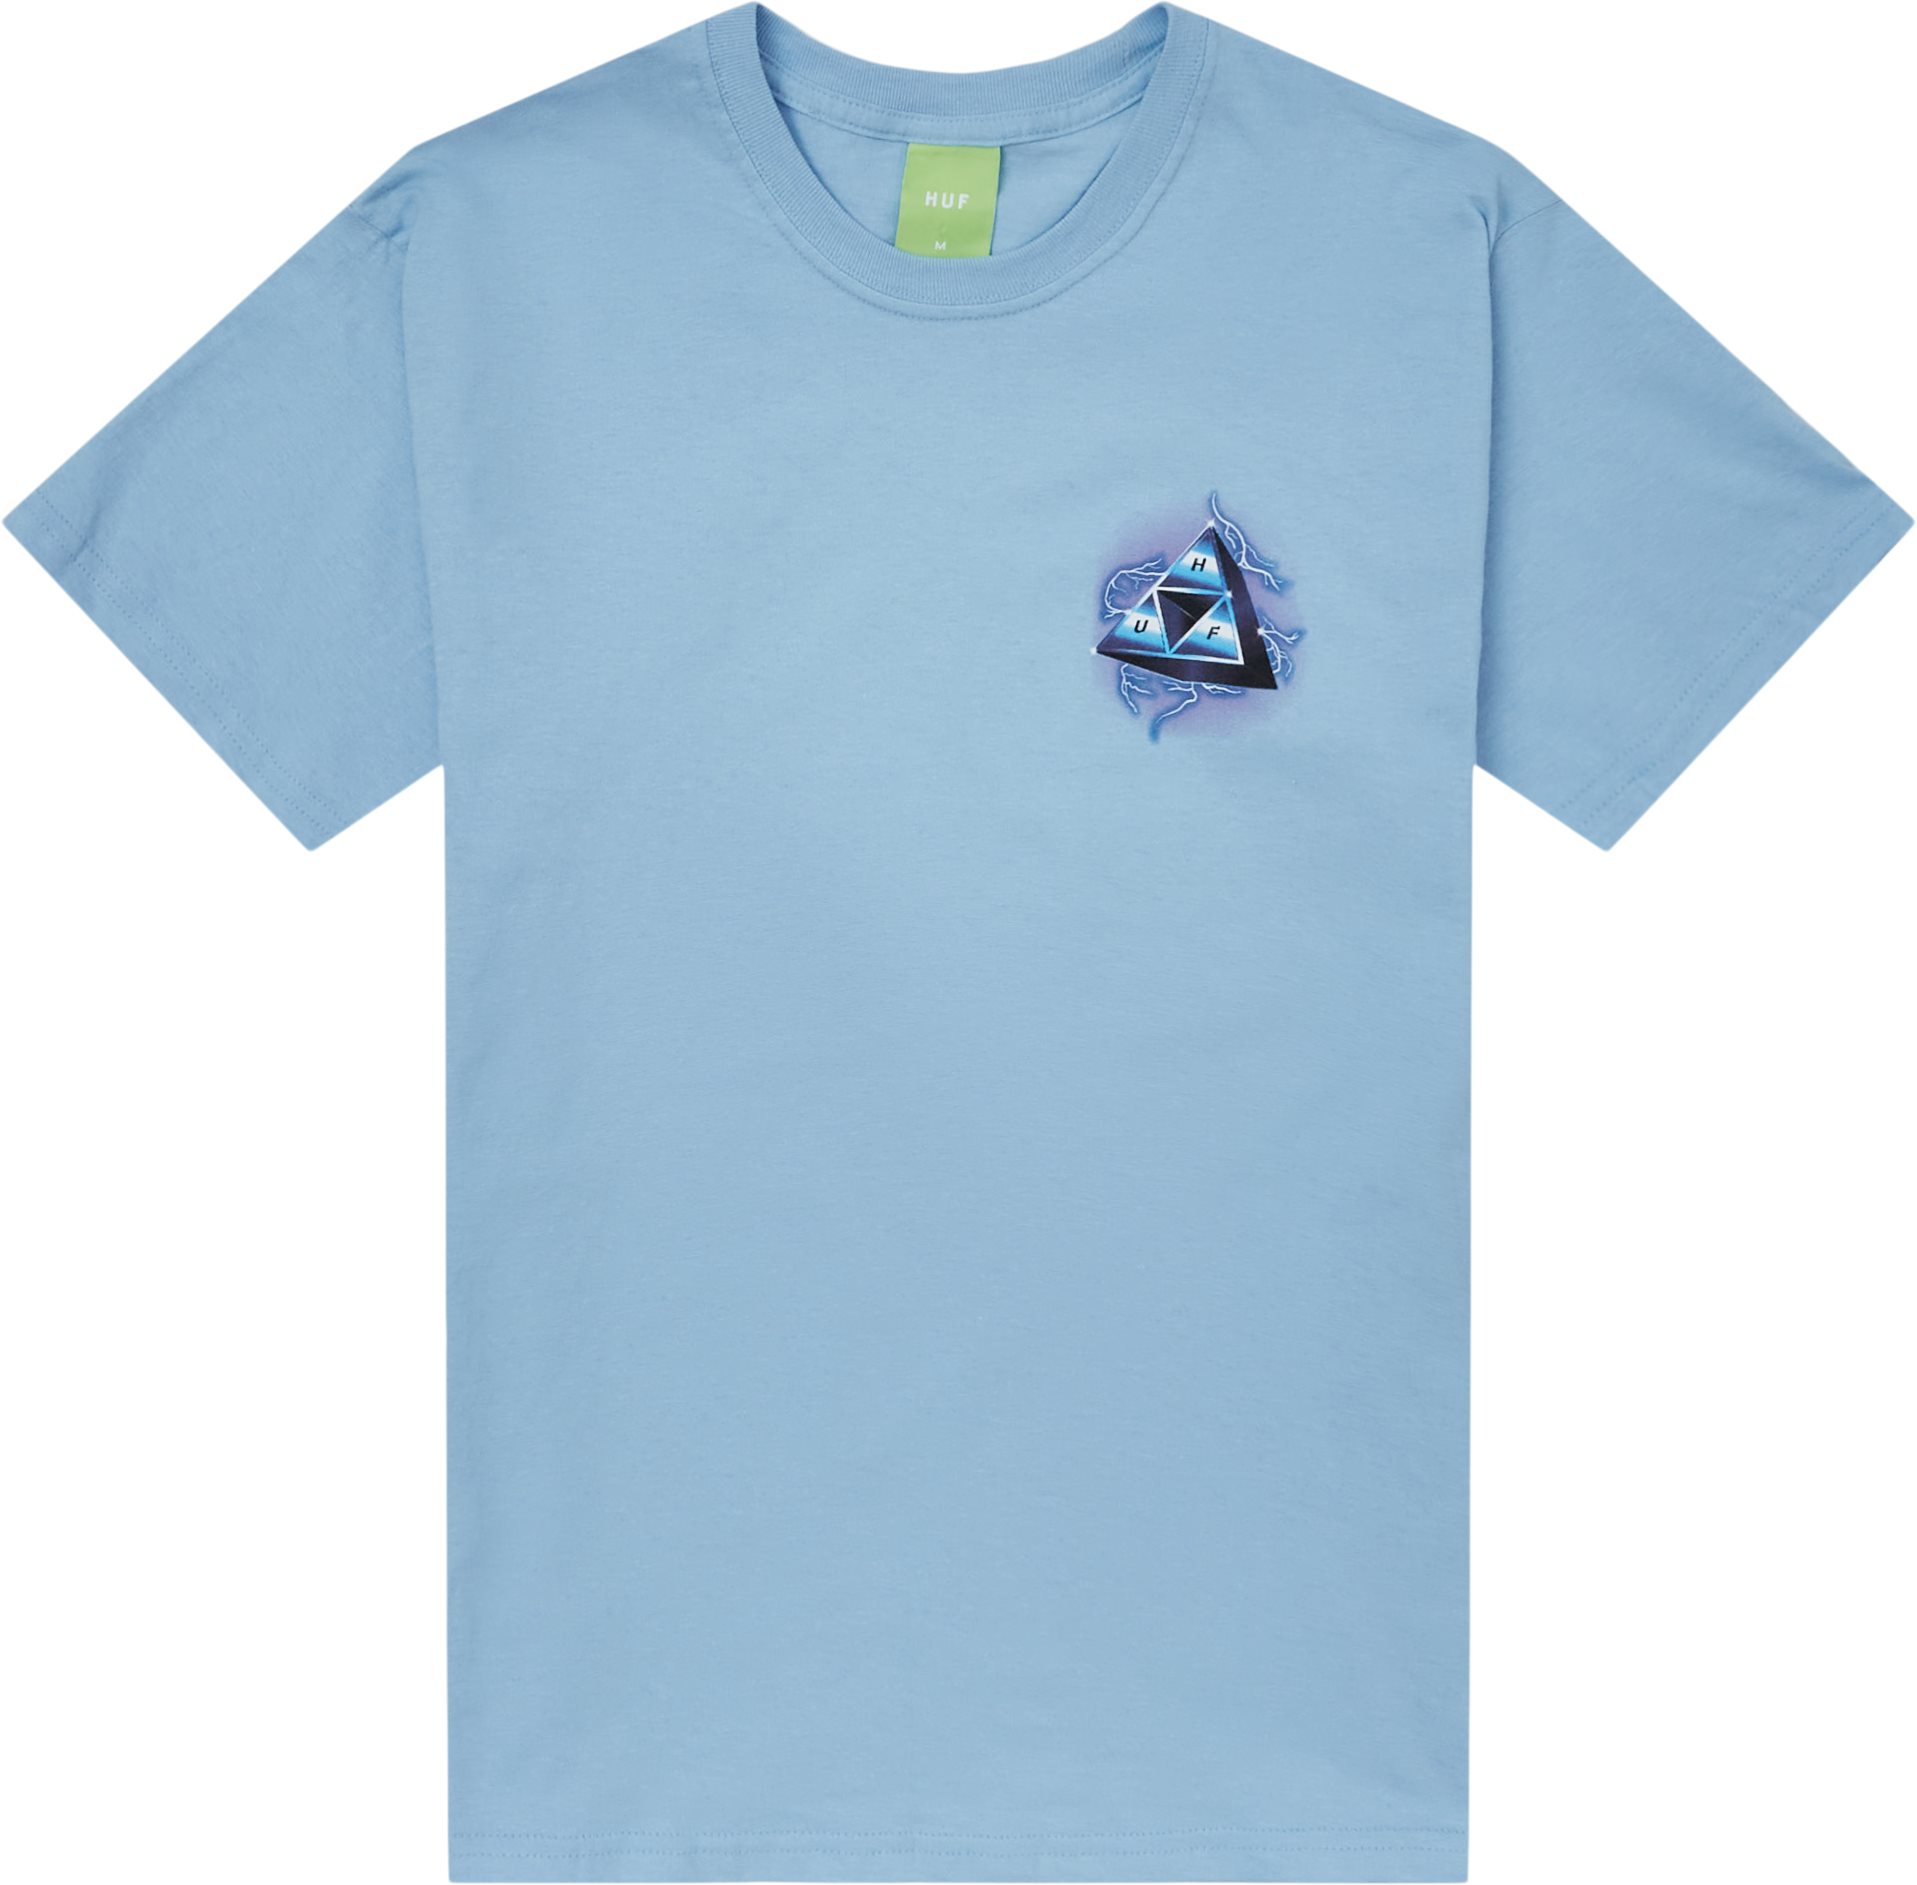 Storm Tee - T-shirts - Regular fit - Blå